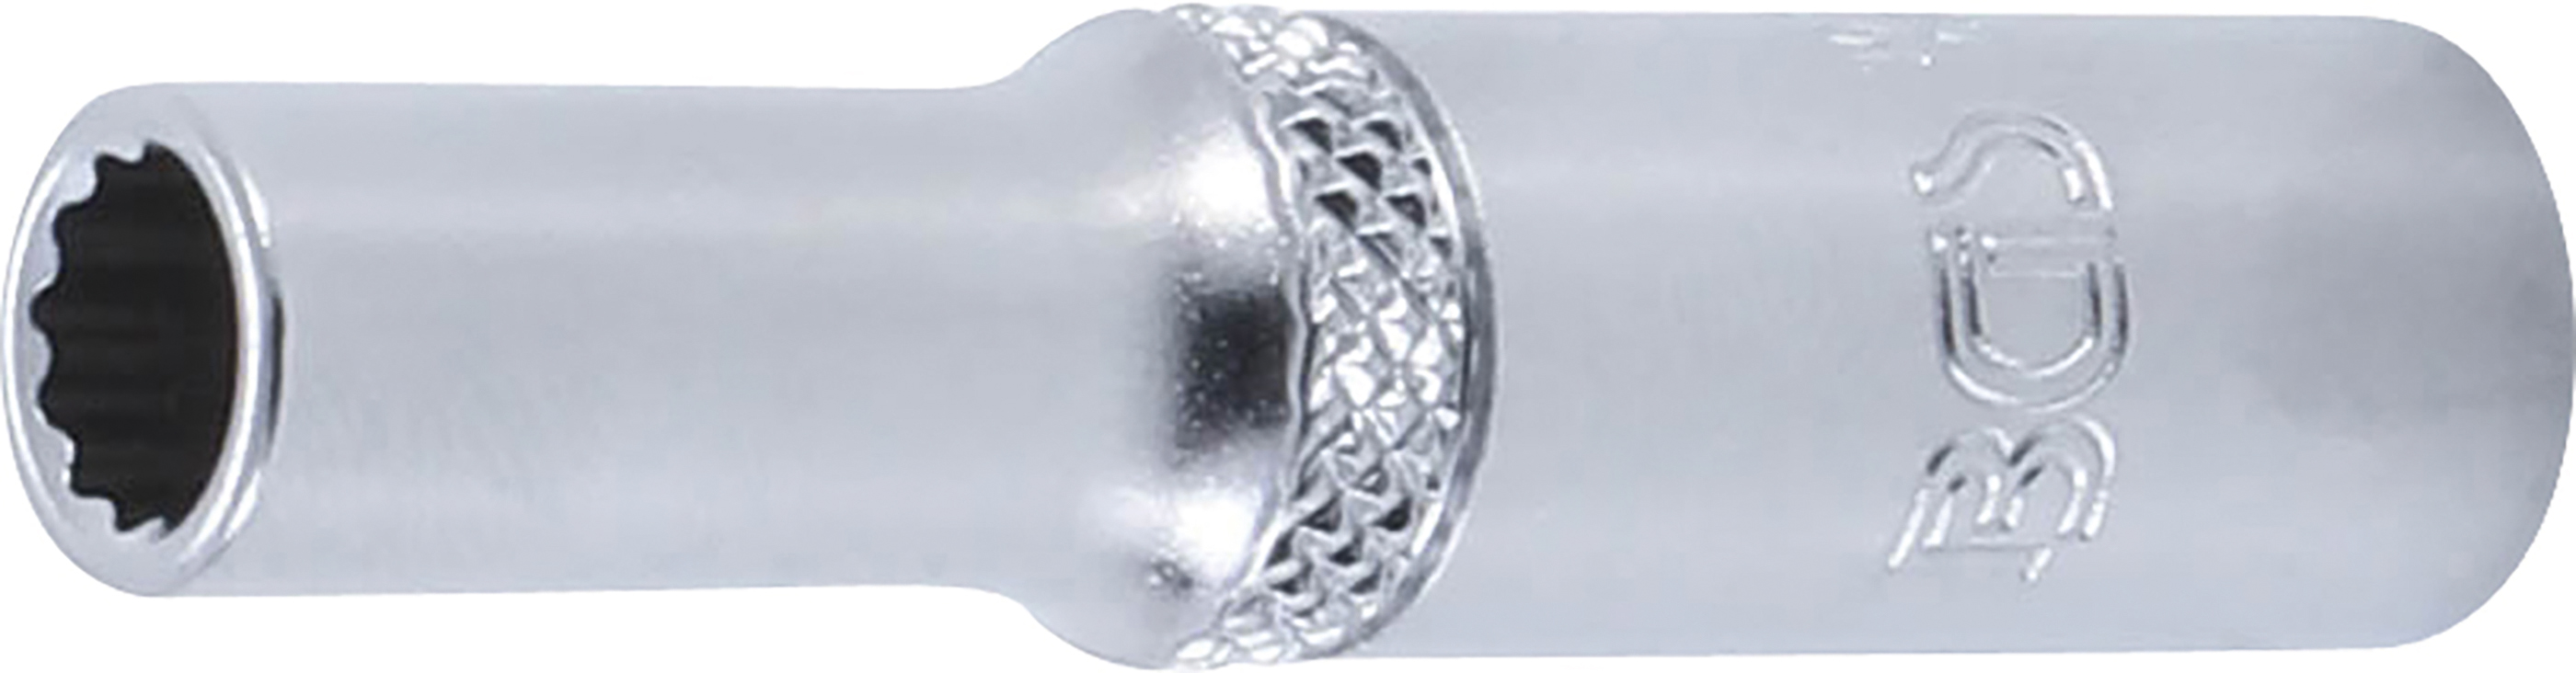 BGS 10706 Cheie tubulară 6 mm in 12 colțuri, lungă cu antrenare 6,3 mm (1/4")mm